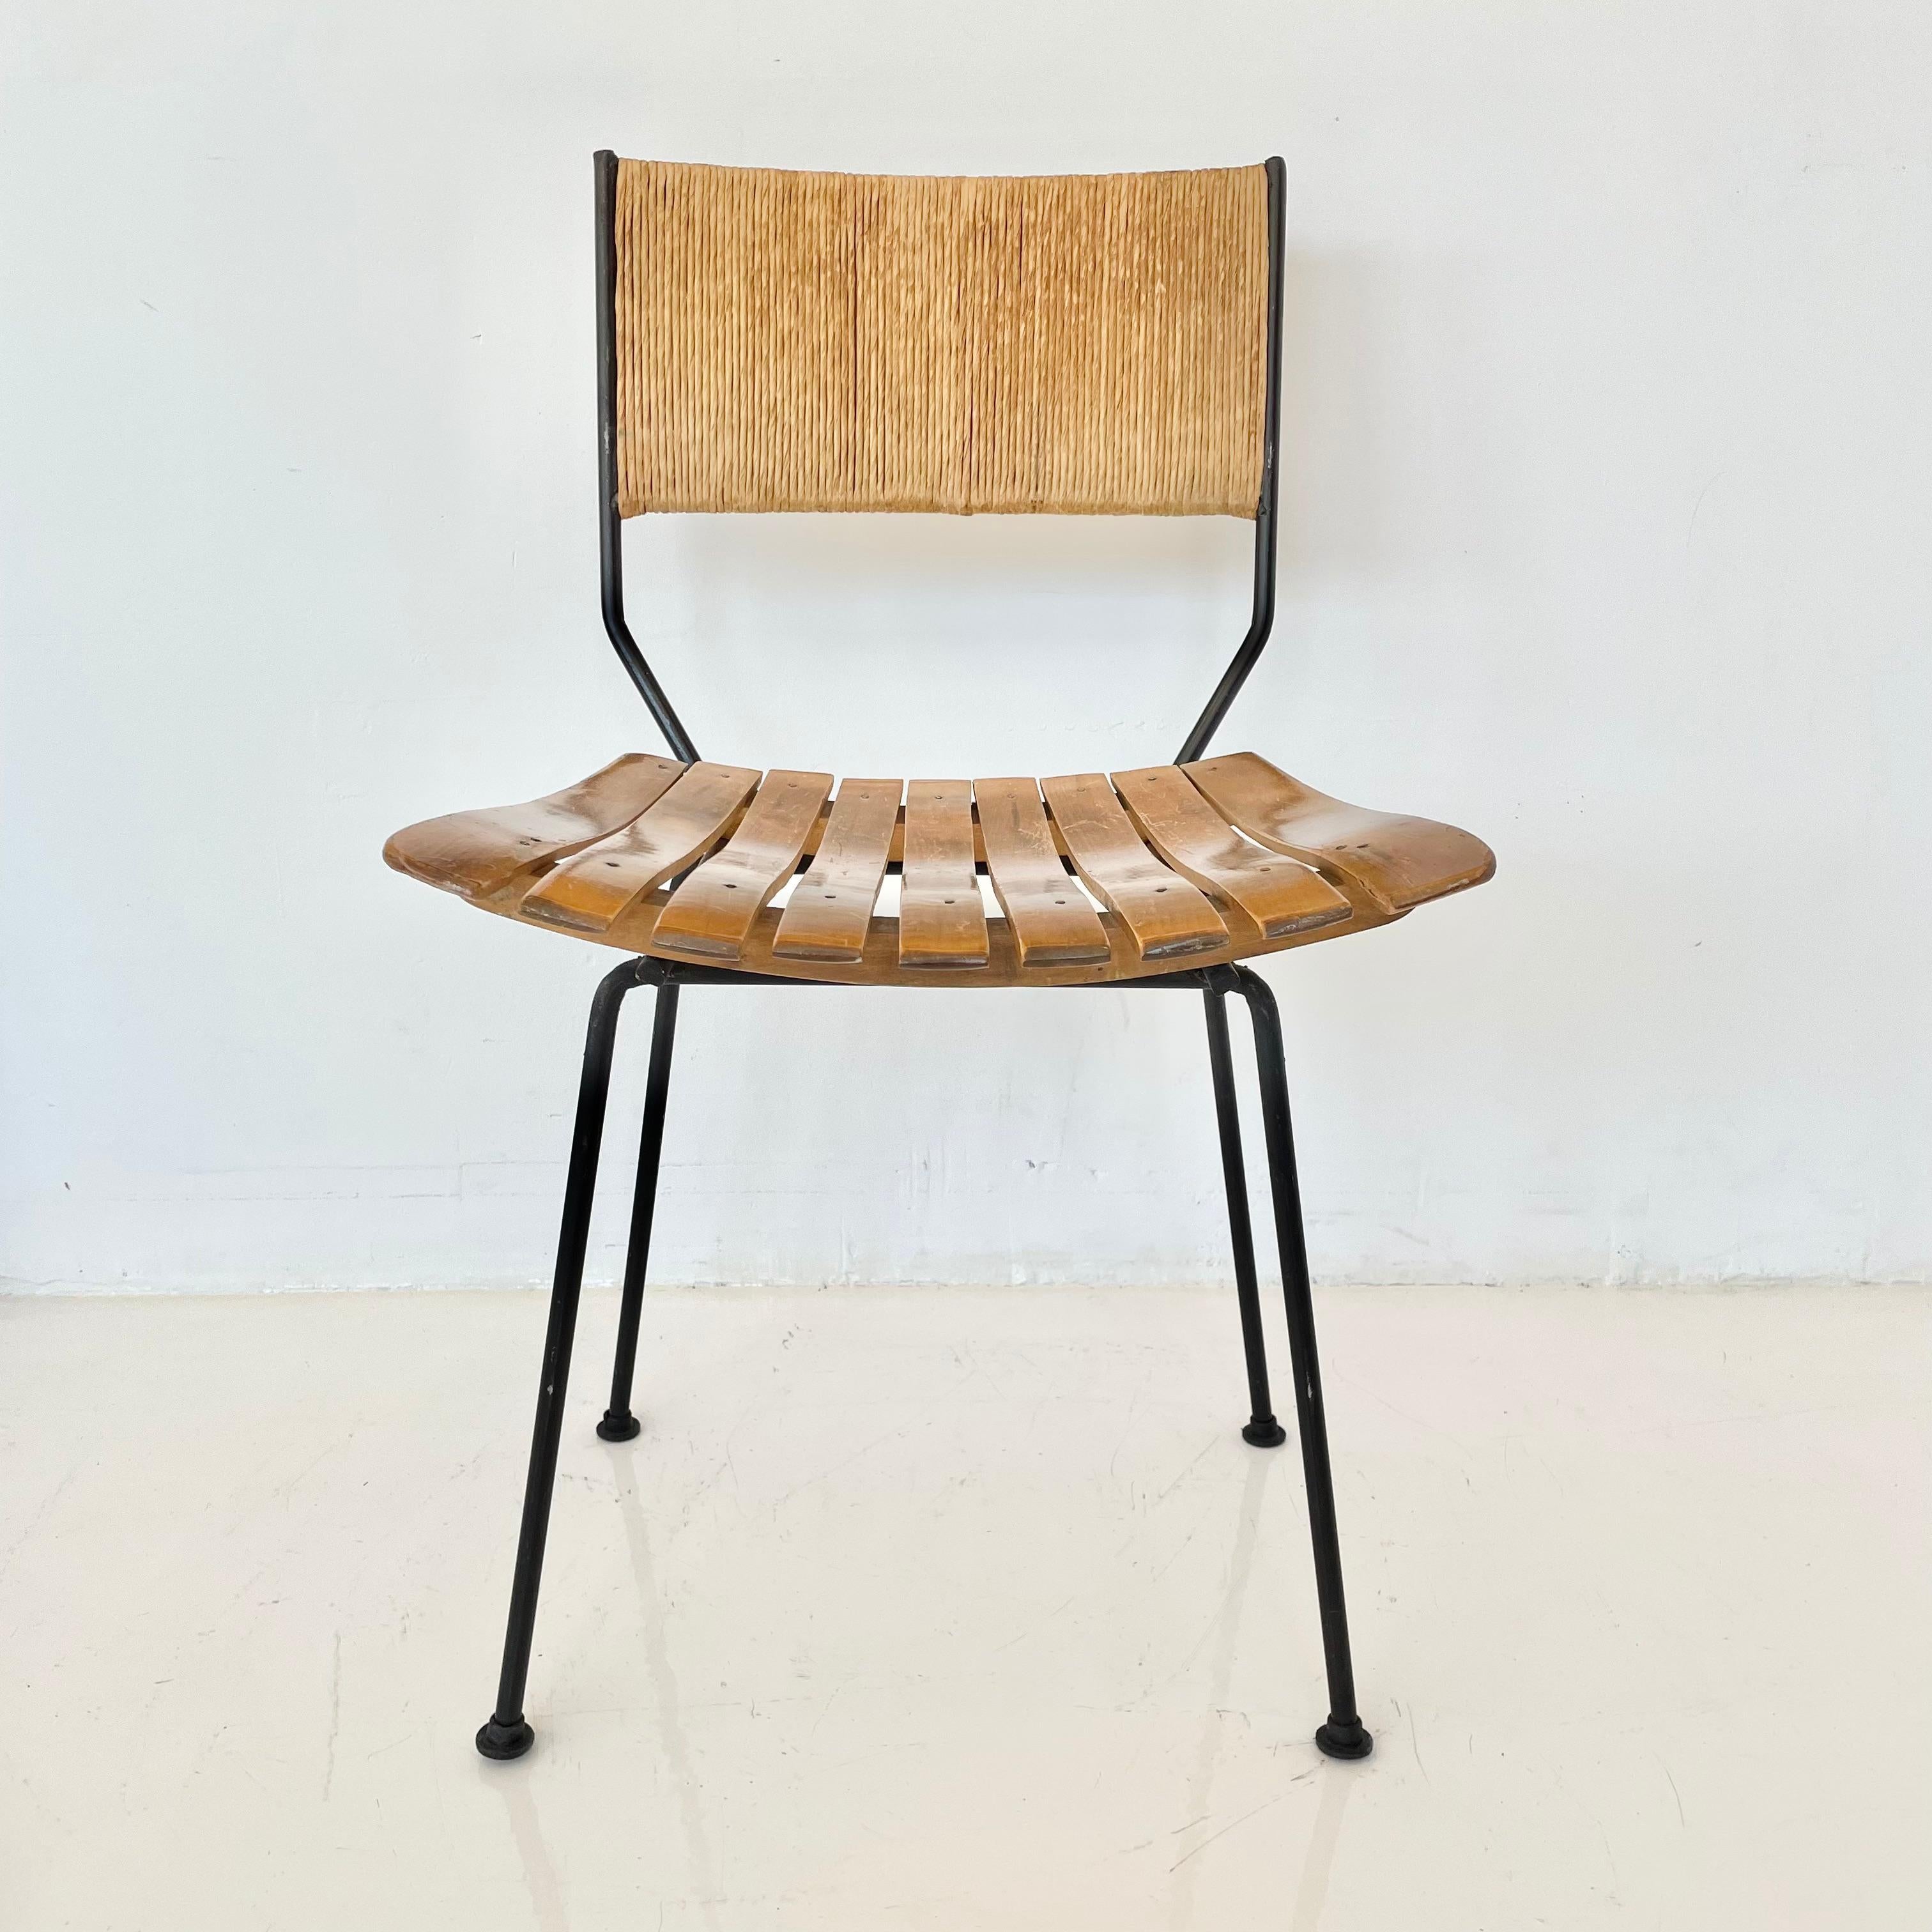 Chaise sculpturale Arthur Umanoff avec dossier en jonc, assise en bois à lattes et pieds en fer. Cadre en métal dans une finition adobe vintage. Un design rare. Siège flottant. Bon état vintage. Une seule chaise est encore disponible. 
      